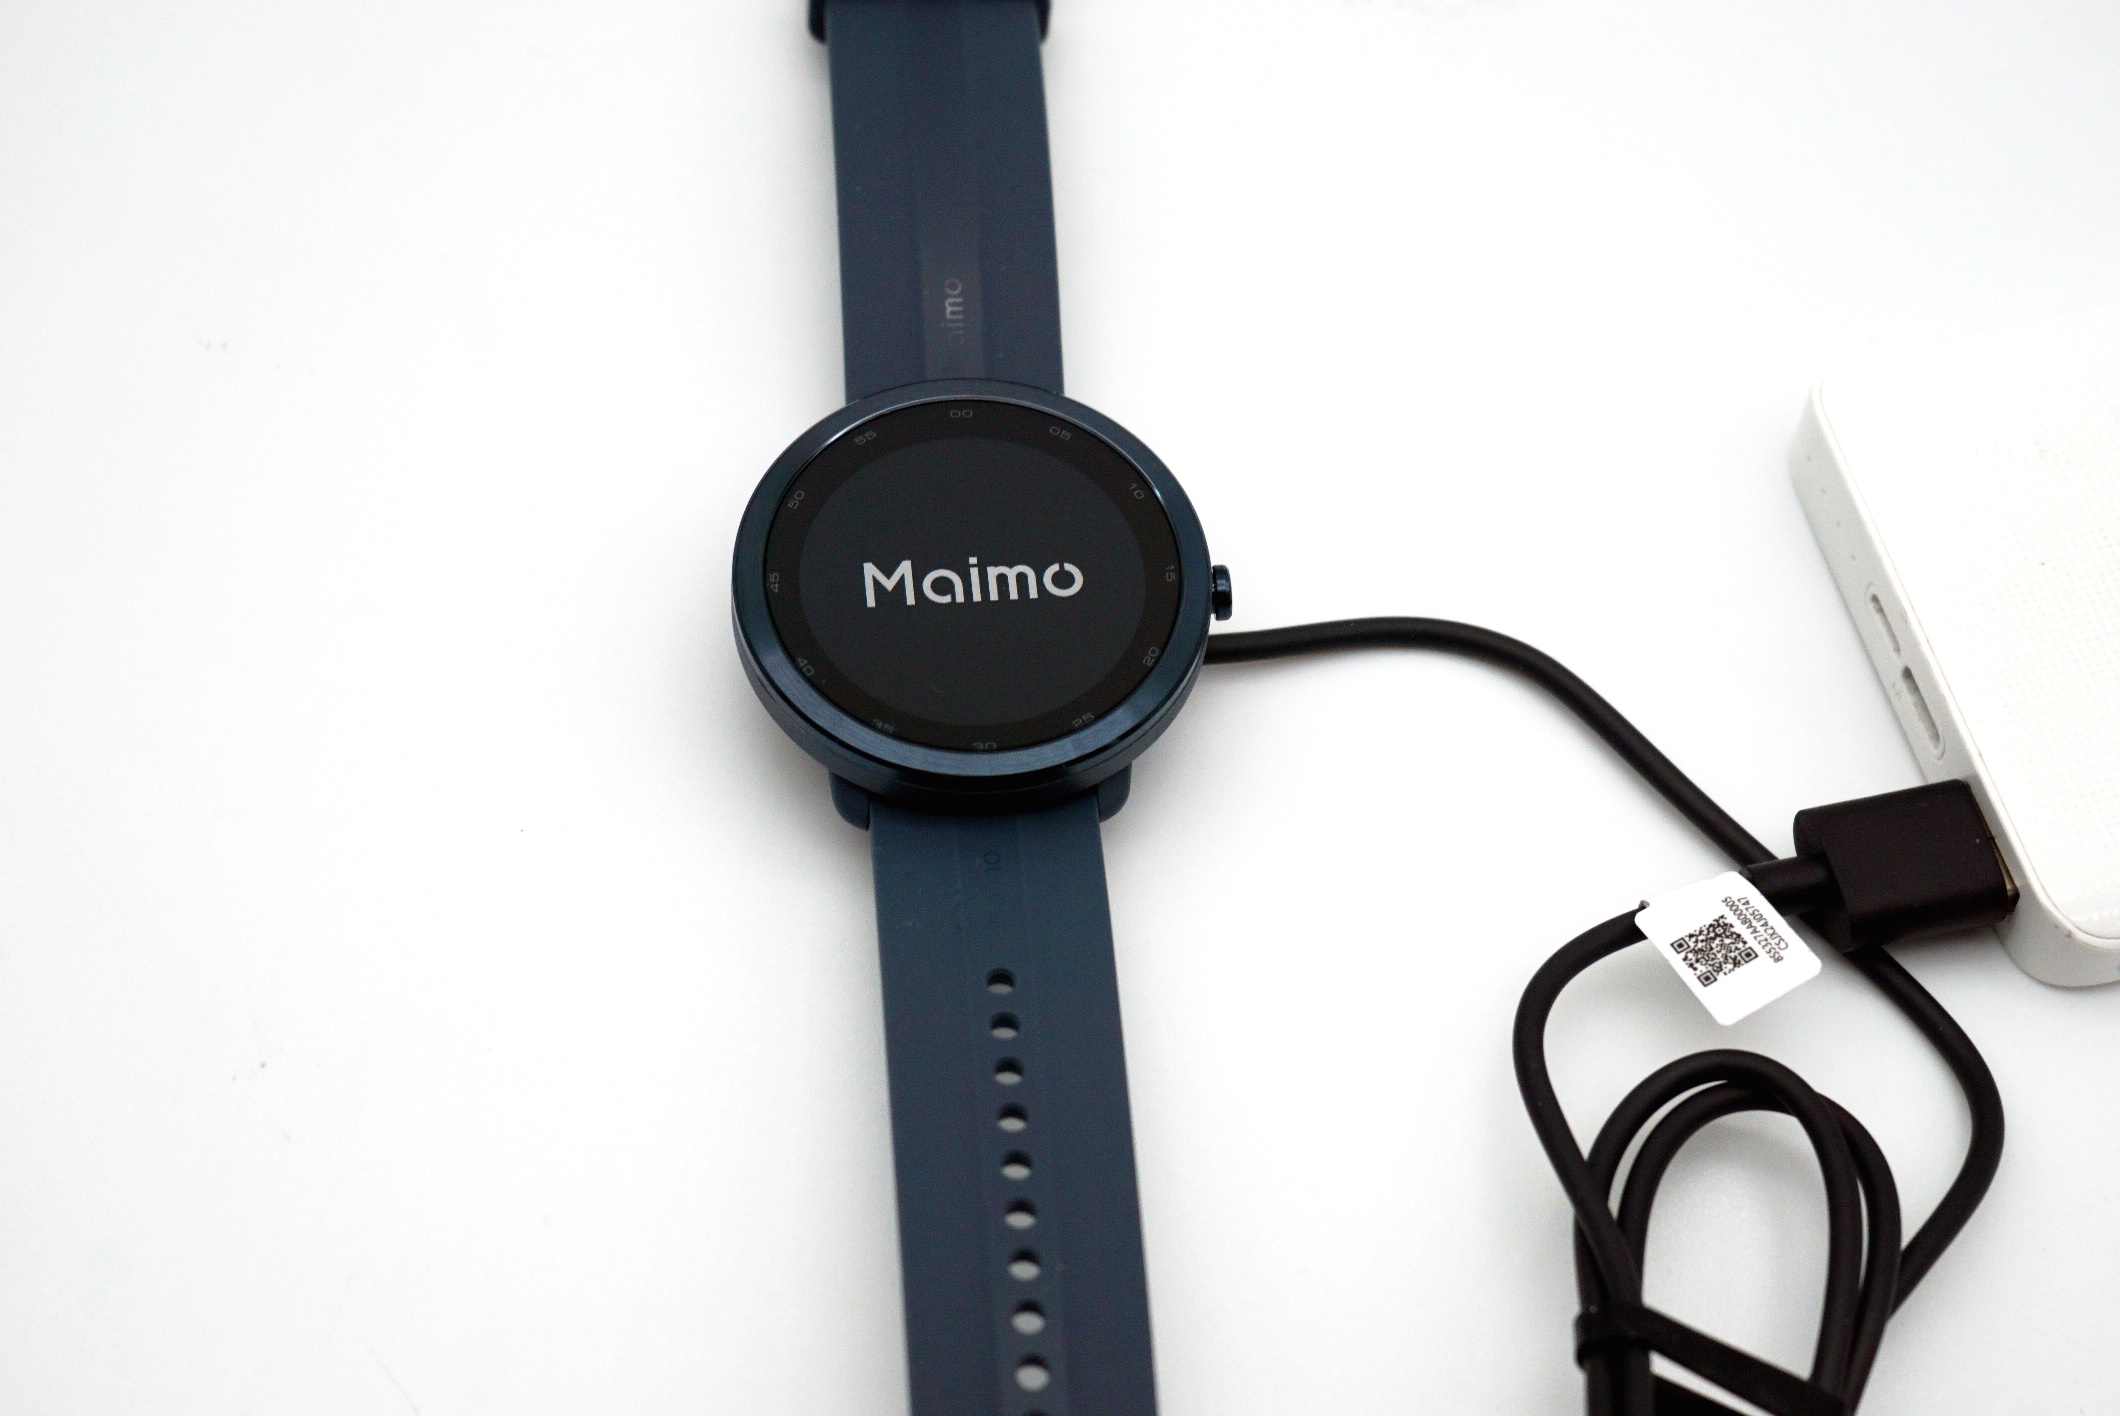 Maimo watch r. Часы Xiaomi Maimo watch r. Часы Maimo wt2103. 70mai Maimo wt2105w. Умные часы Xiaomi 70mai Maimo watch r wt2001 Black eu.